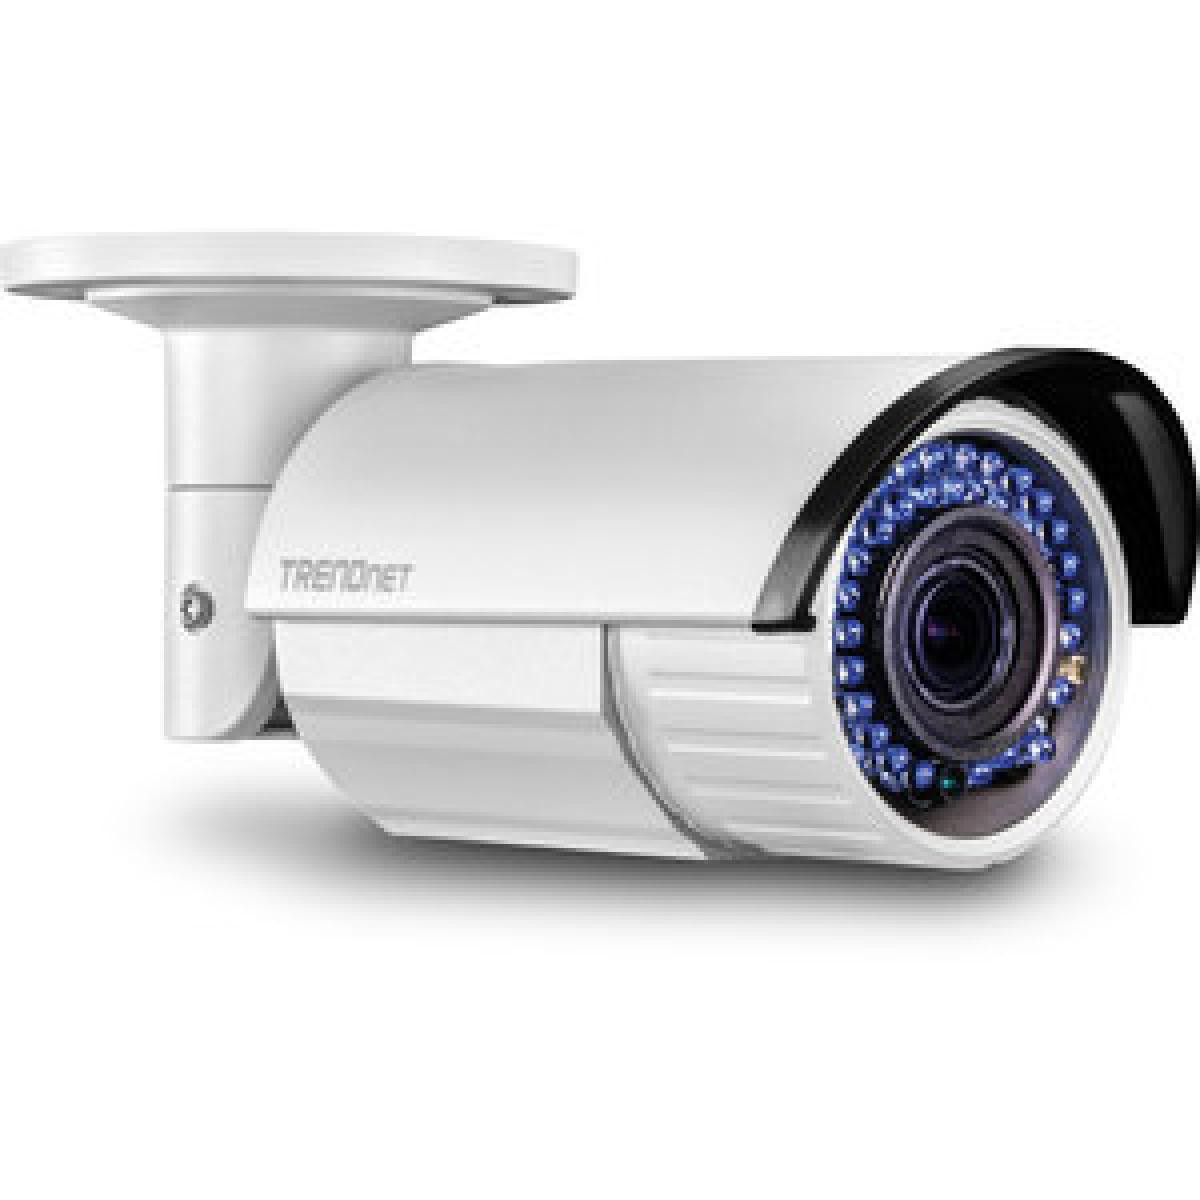 Trendnet - TRENDNET TV-IP340PI - Caméra de surveillance connectée